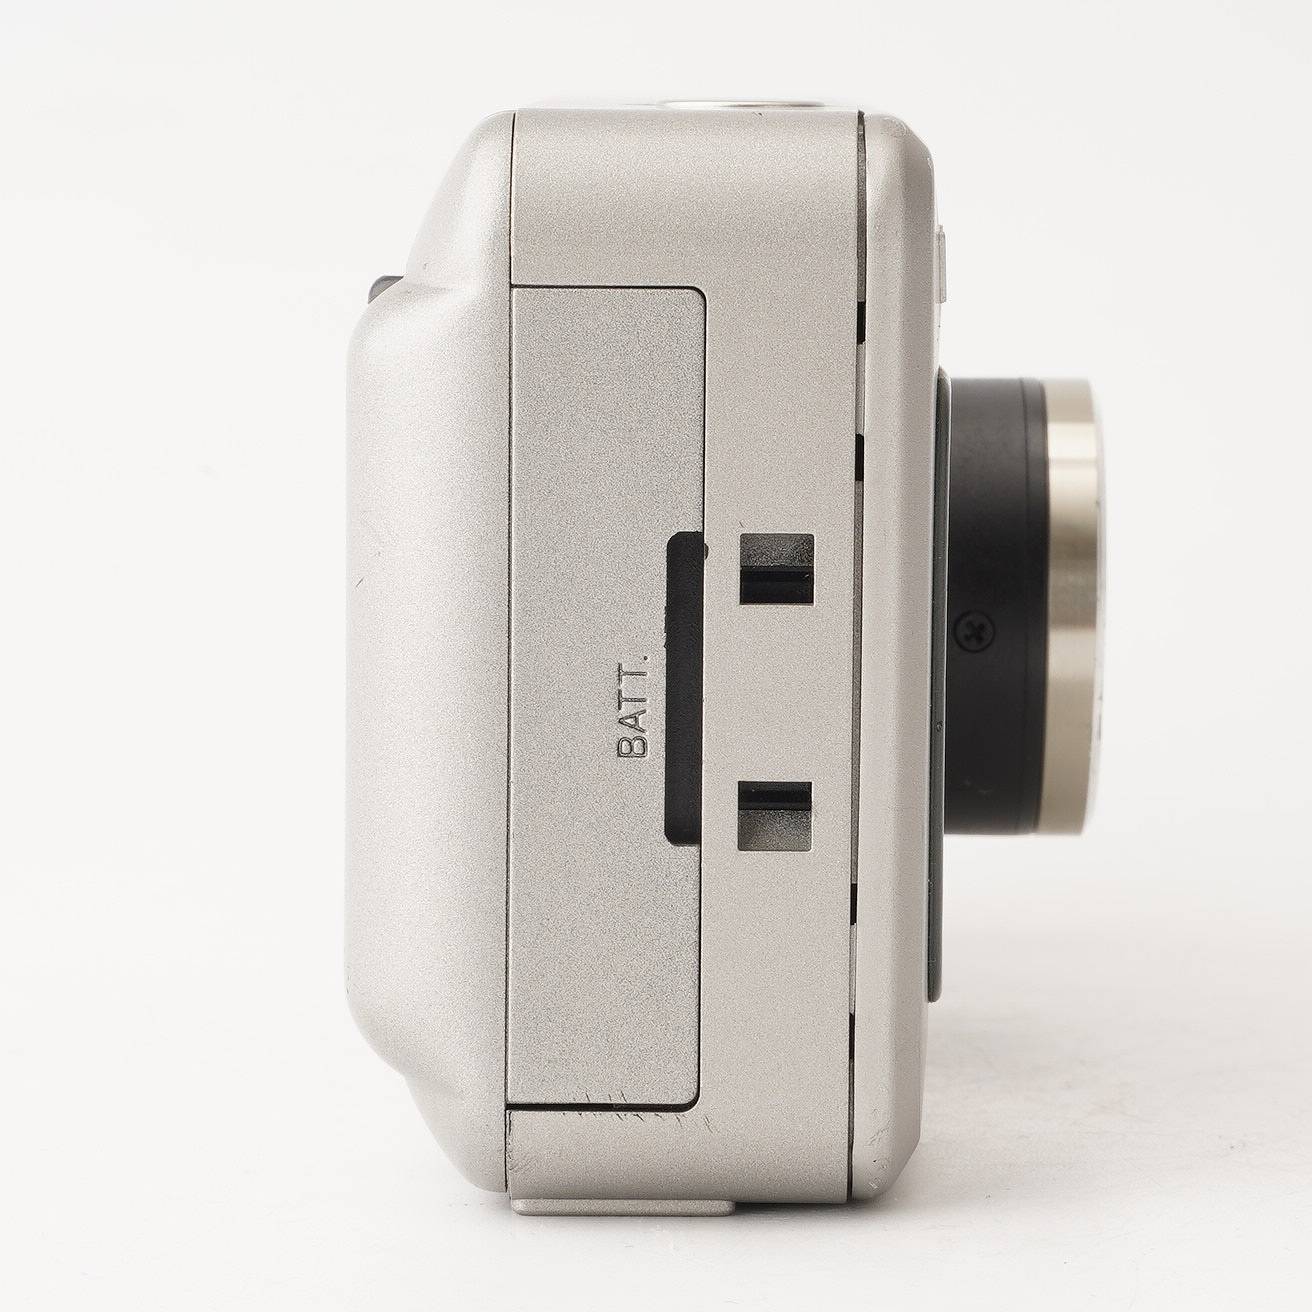 コニカ Konica BiG mini F / 35mm F2.8 – Natural Camera / ナチュラル ...